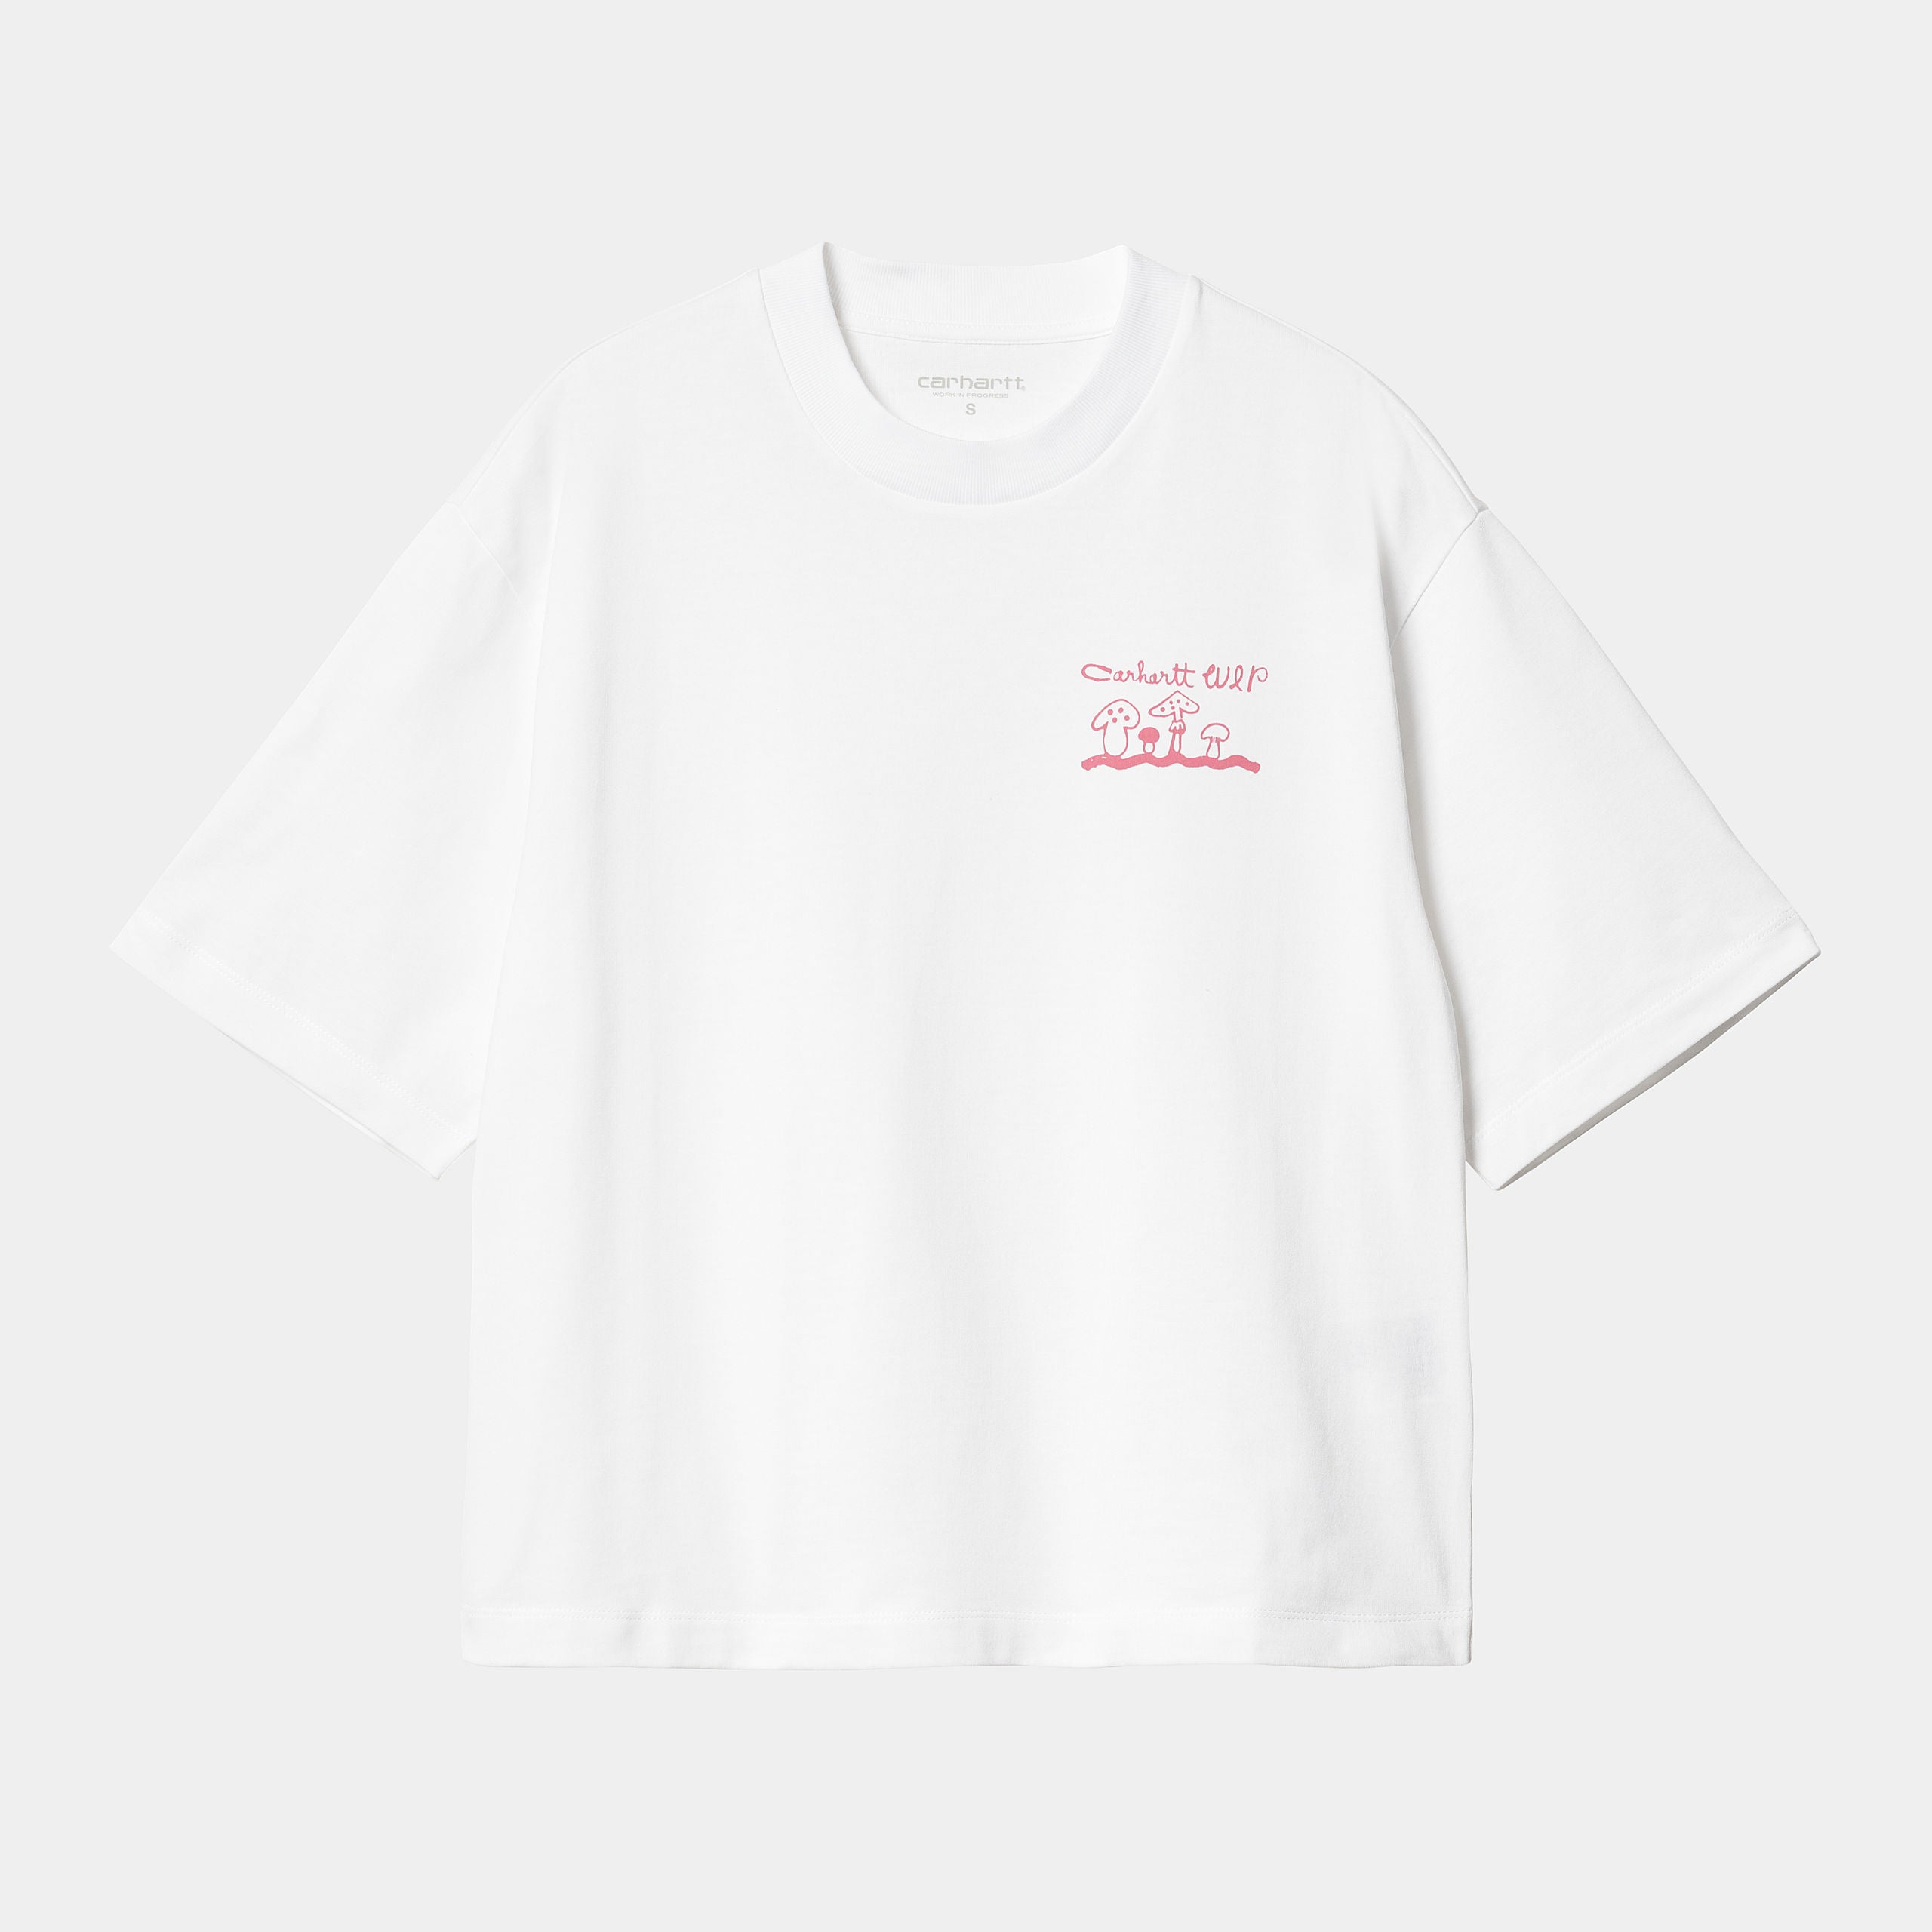 w-s-s-kainosho-t-shirt-white-charm-pink-613_png.jpg